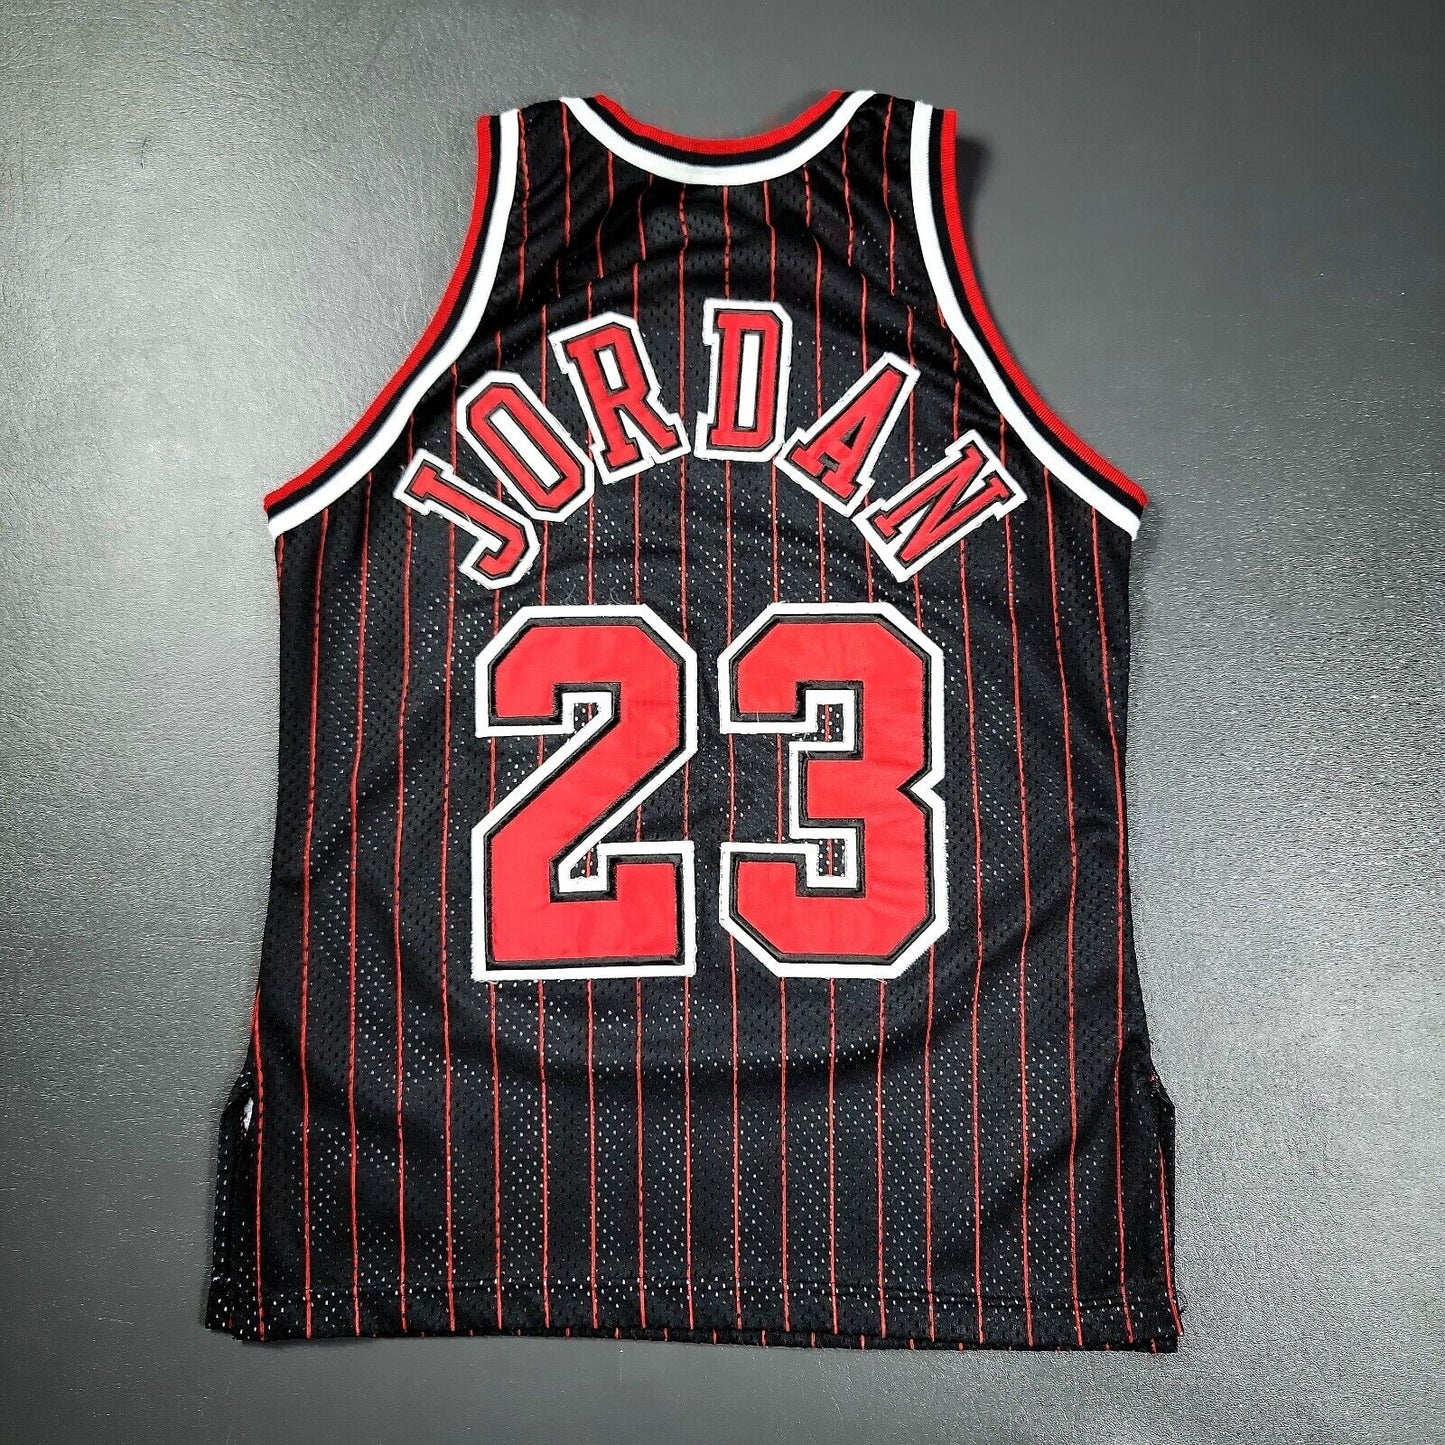 100% Authentic Michael Jordan Vintage Champion 95 96 Bulls Jersey Size 40 M Mens